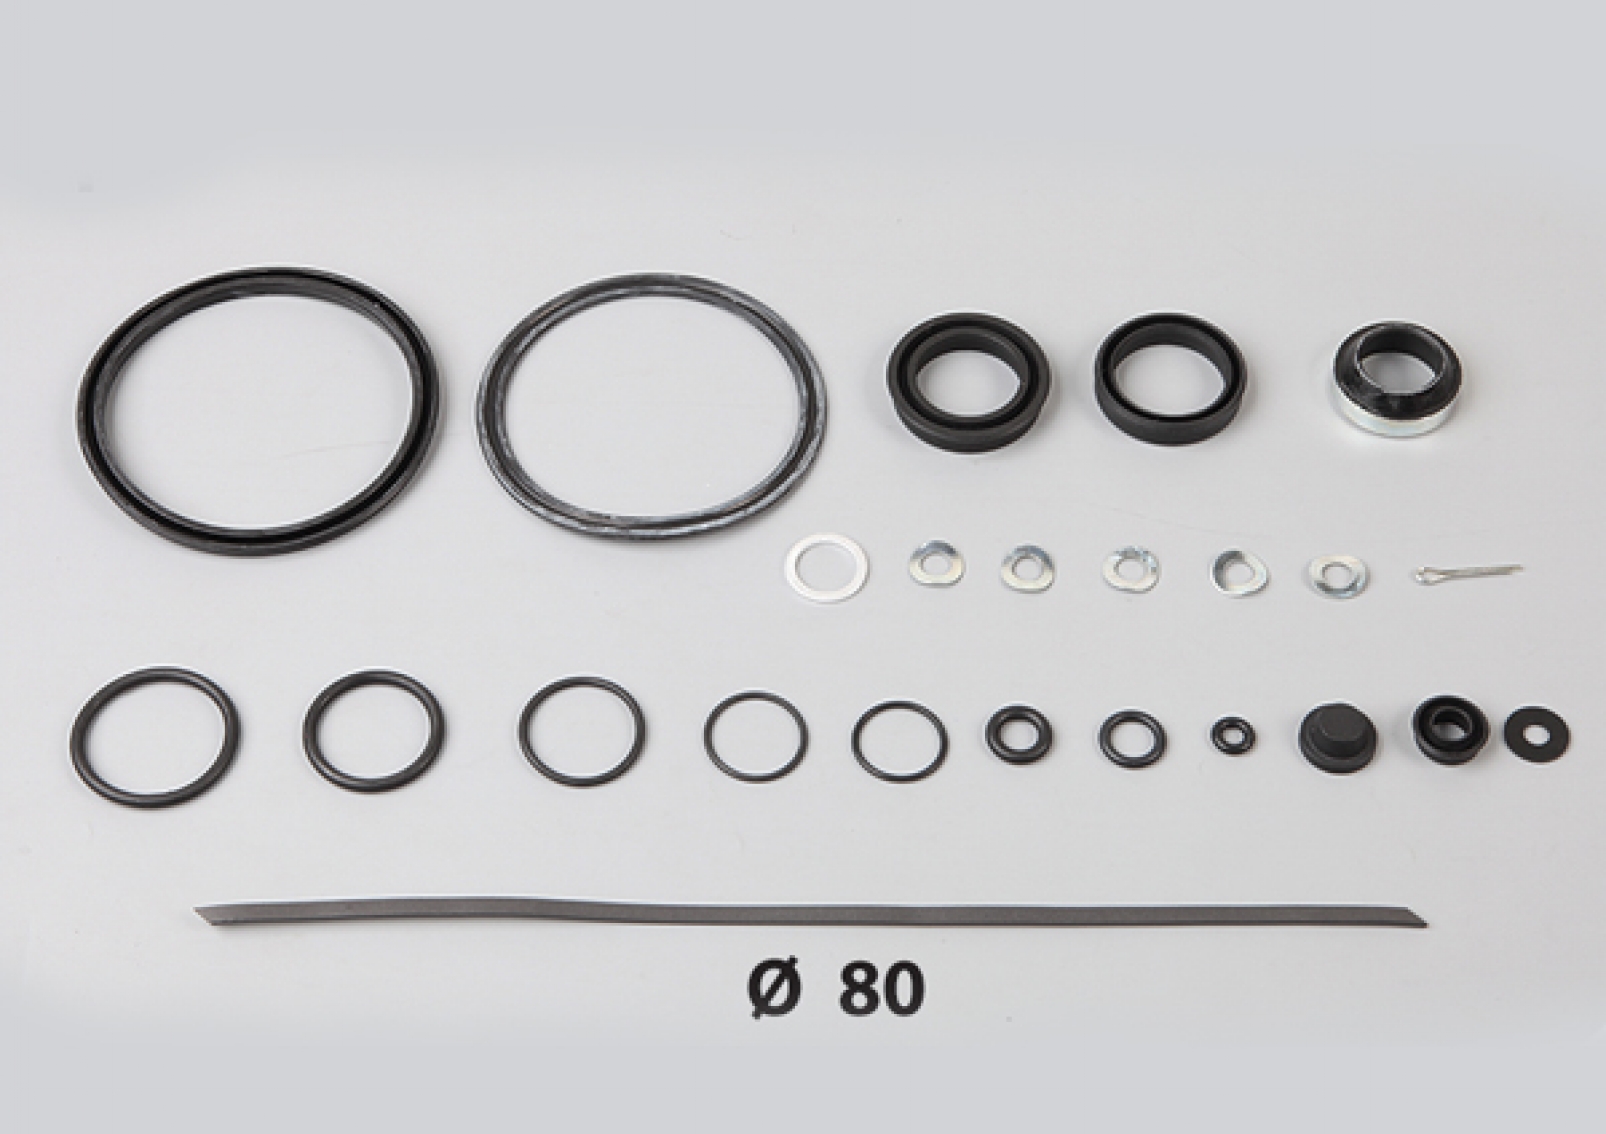 Clutch Servo Repair Kit for Volvo FH12, FH10, FH17, Scania, Daf. 626703AM, 3095041, 85102140